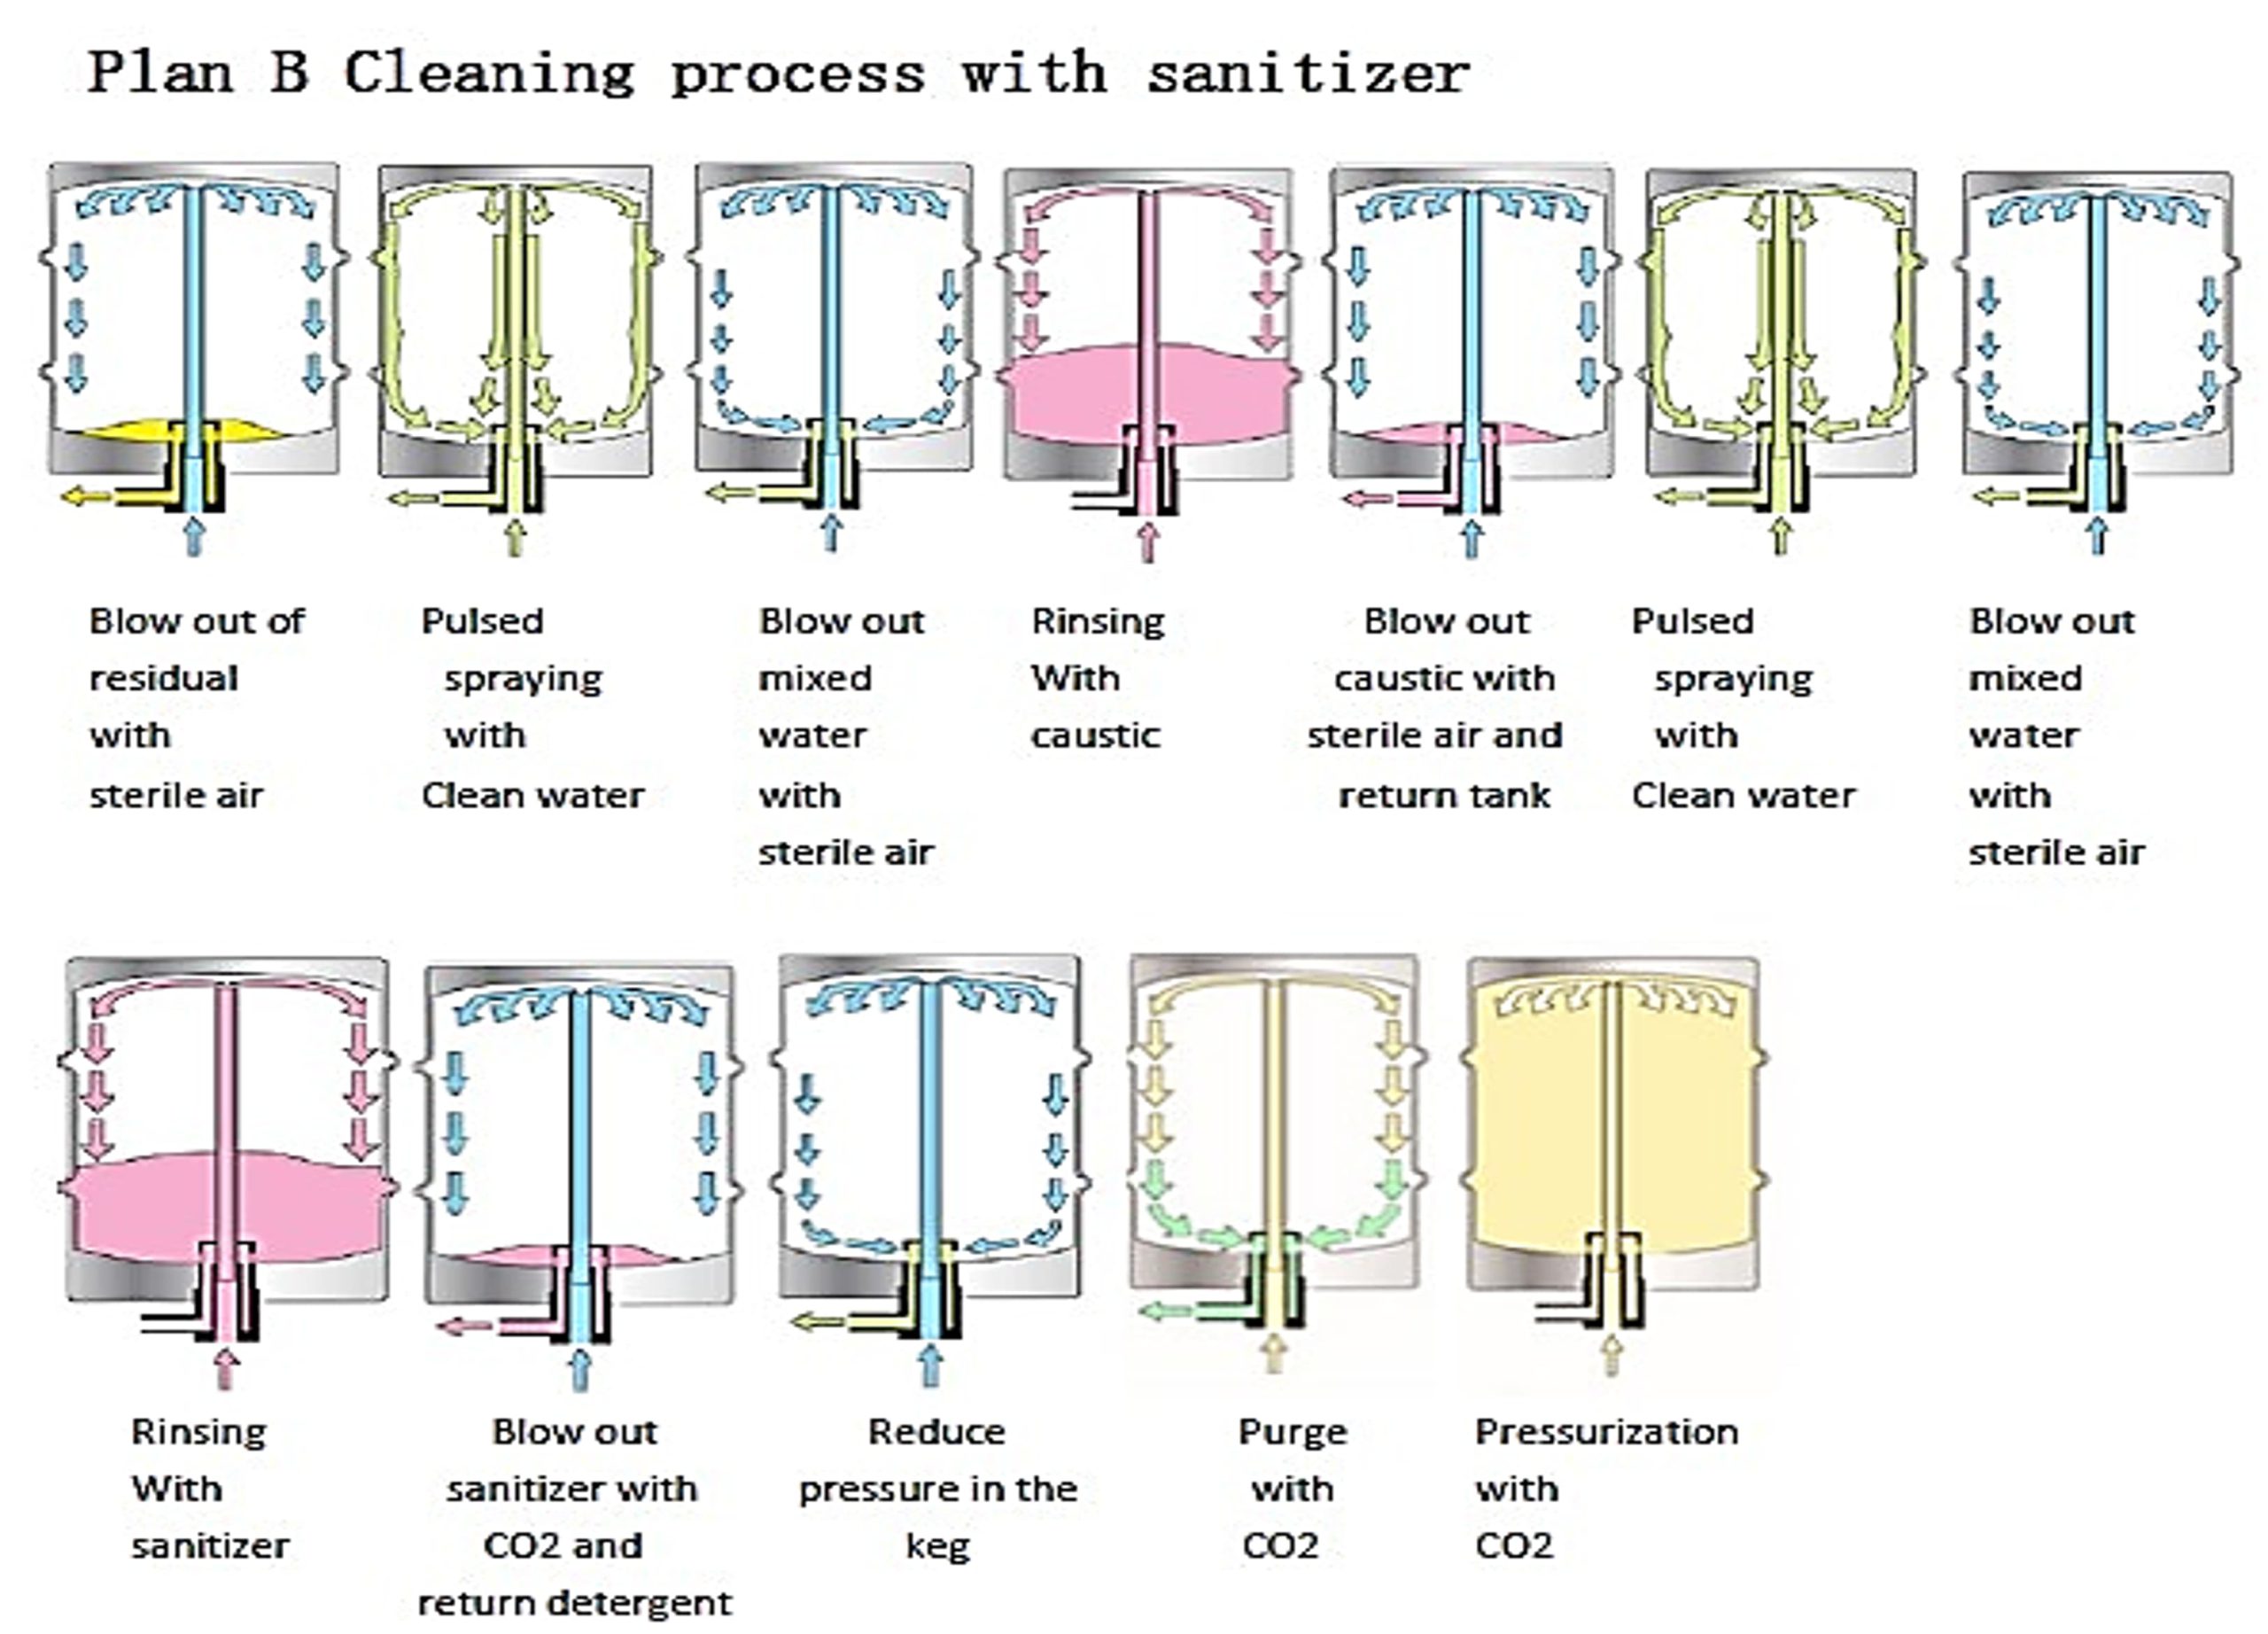 SKE-KW-Ⅱ | Processus de nettoyage du plan B avec un désinfectant